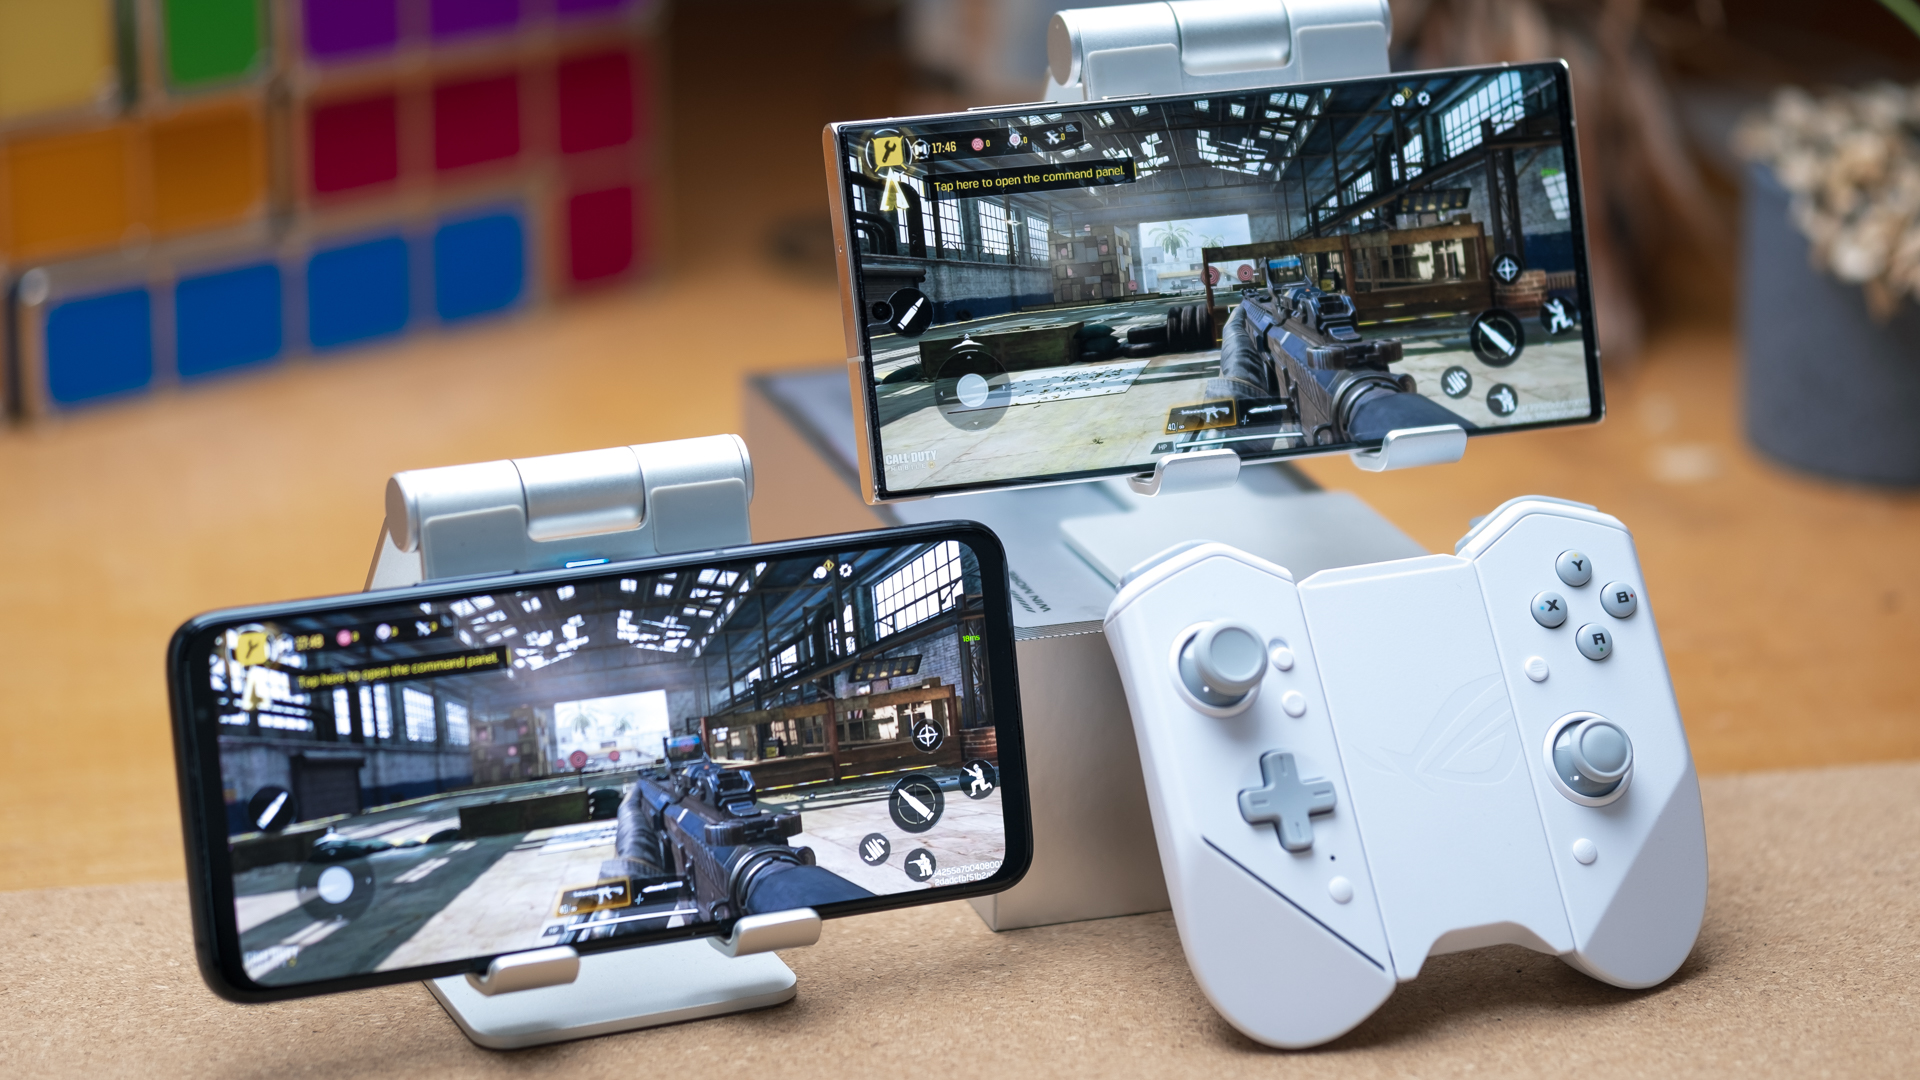 Τα τηλέφωνα παιχνιδιών δοκιμάζουν το Call of Duty Mobile στο παιχνίδι